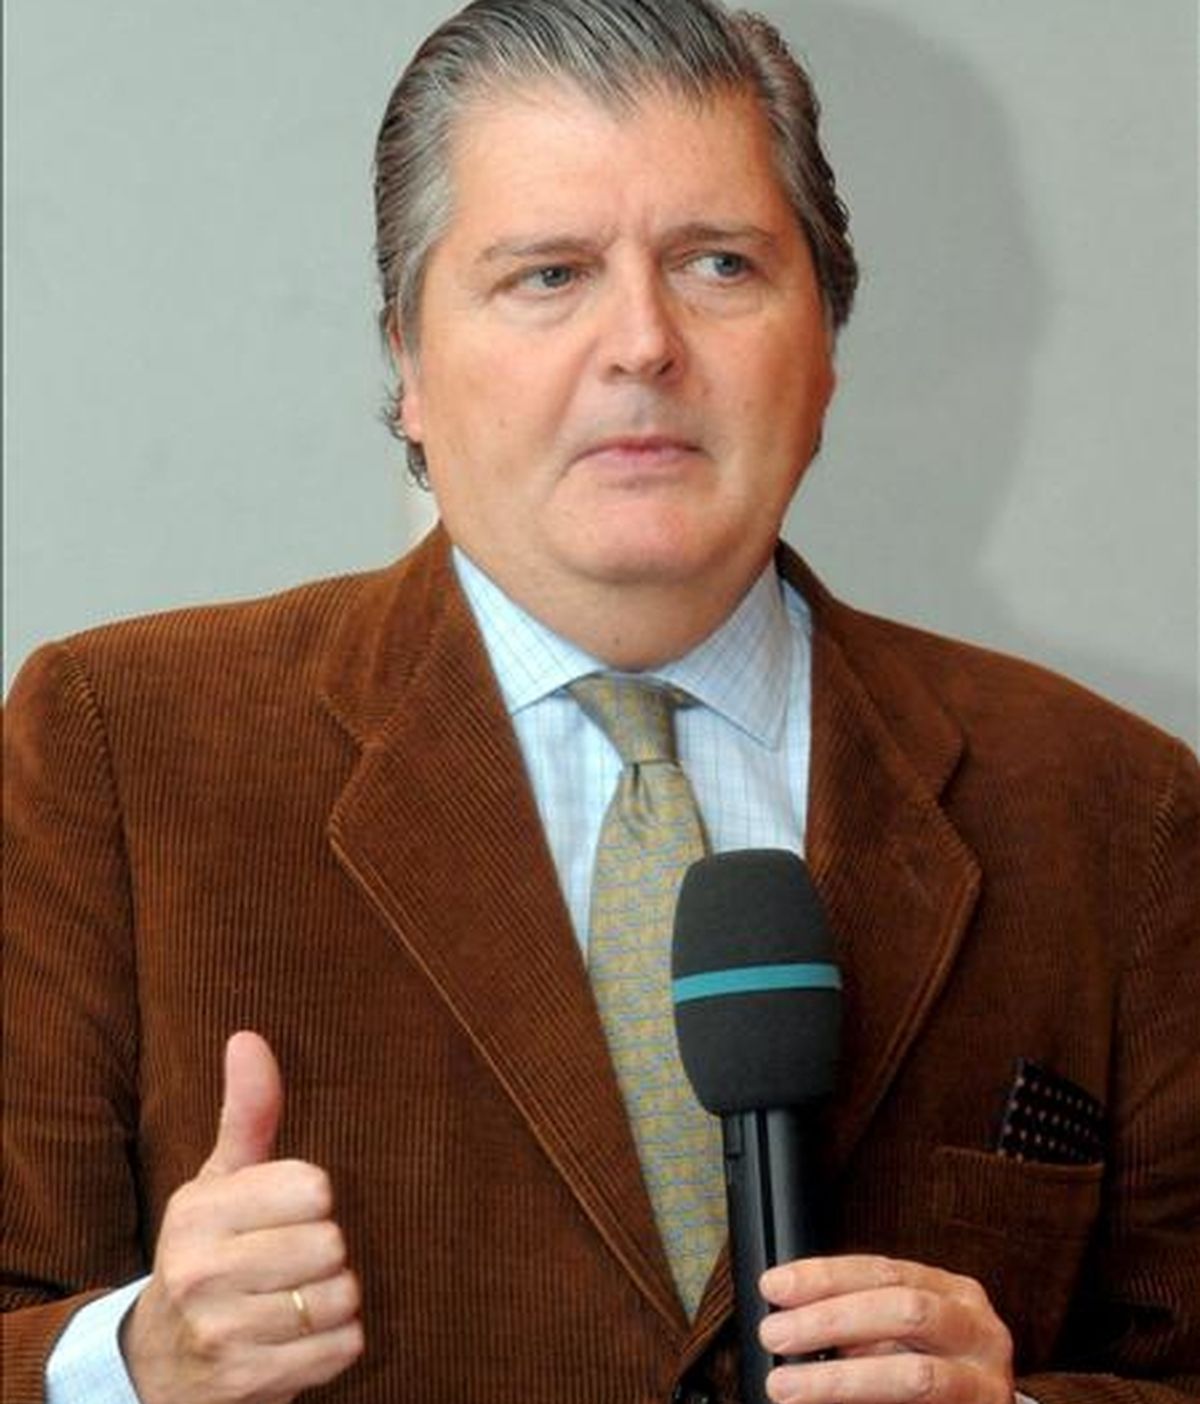 El eurodiputado español Inigo Méndez de Vigo. EFE/Archivo